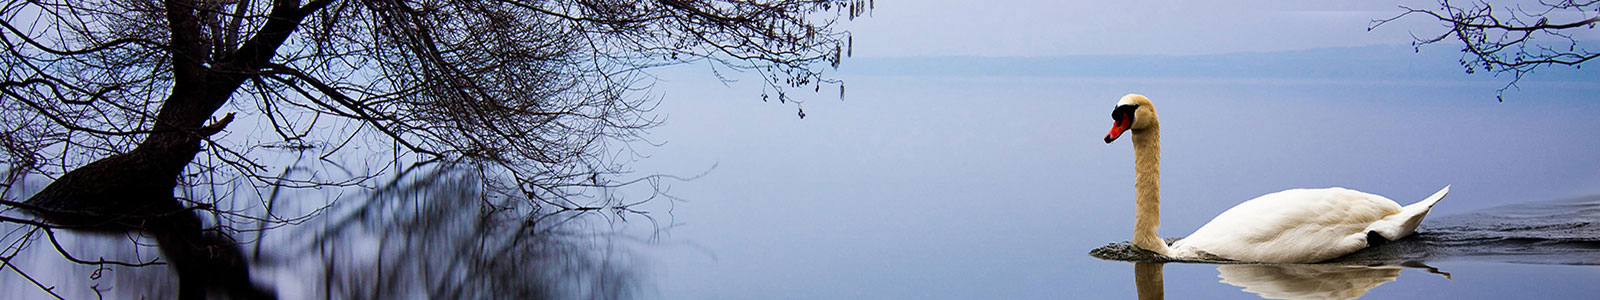 №877 - Одинокий лебедь на озере